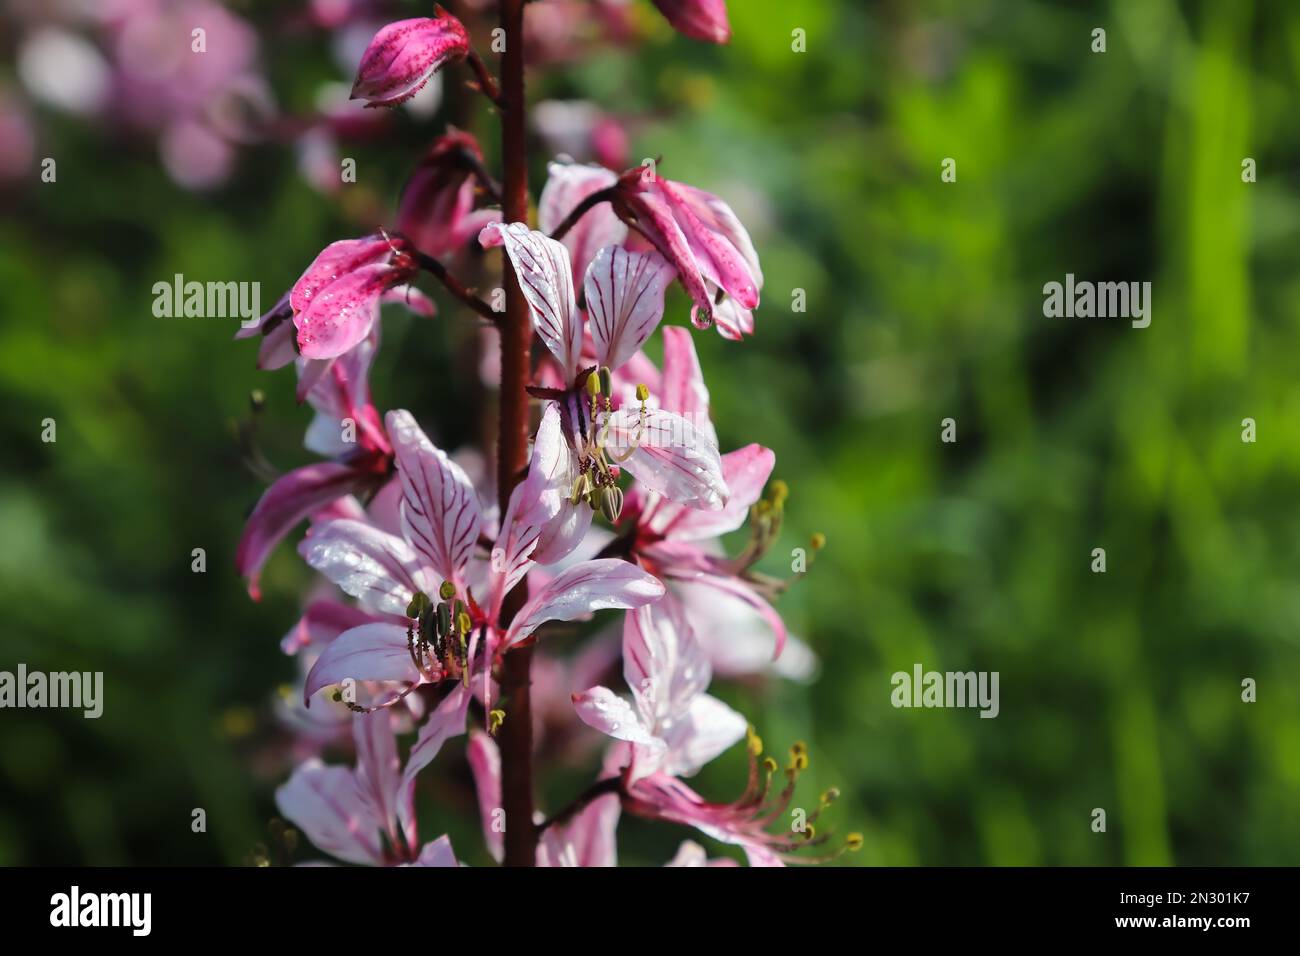 dictamnus. Pink-purple flowers bloom in the wild in drops of dew under sunlight Stock Photo